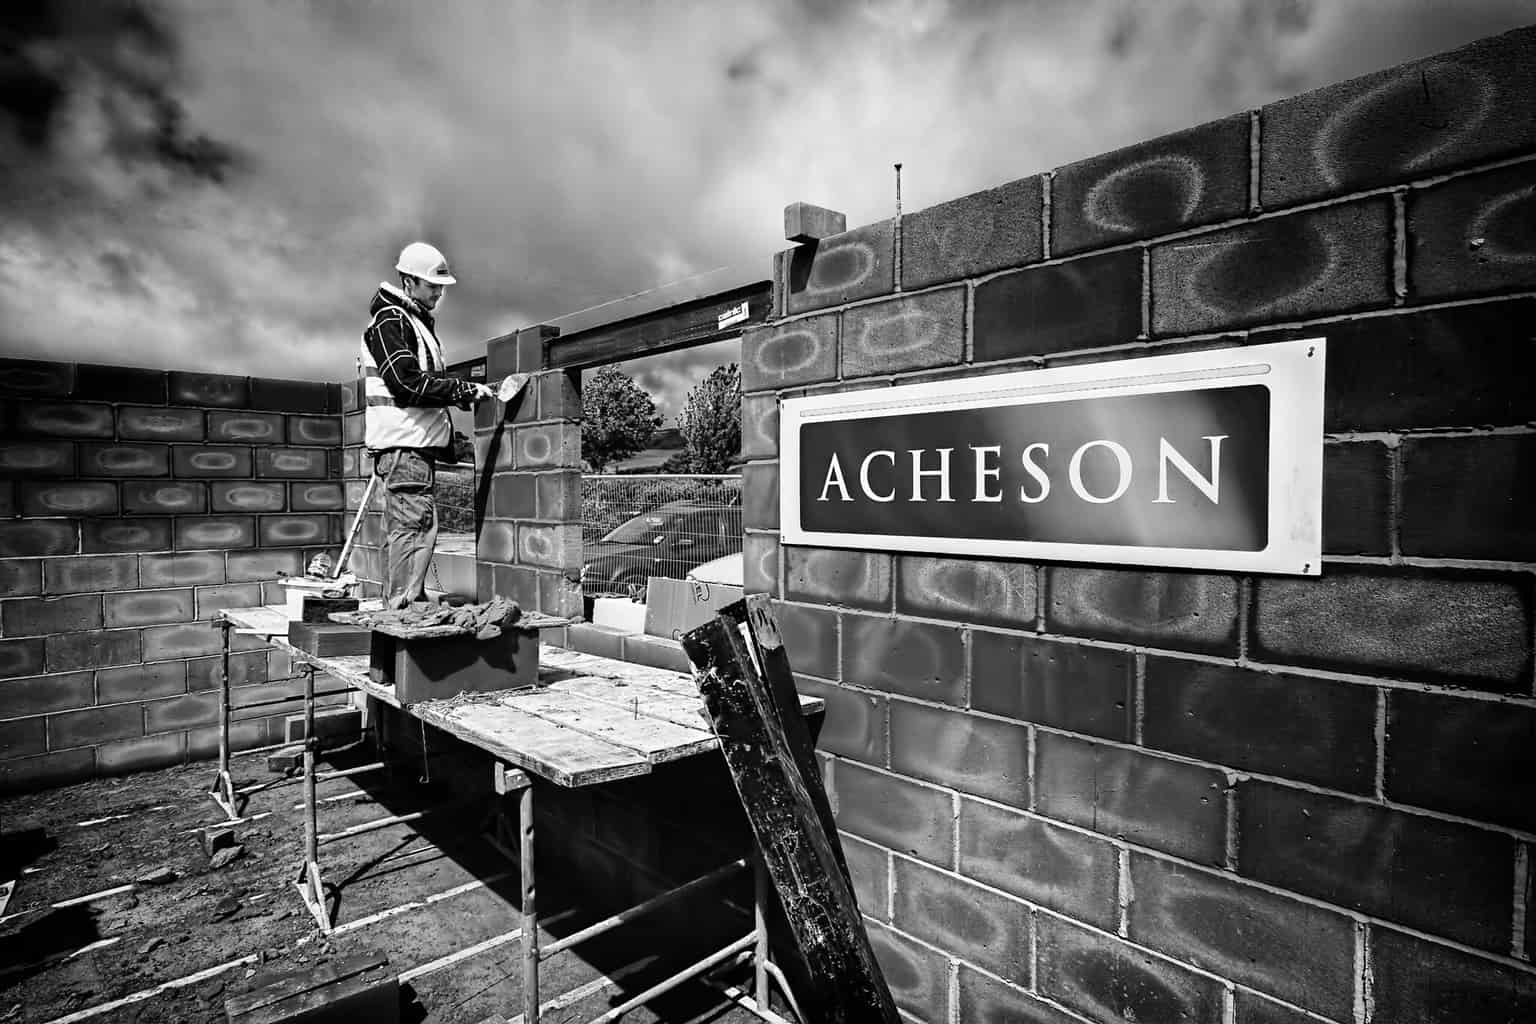  Acheson Construction site, Corfe Castle, Dorset 